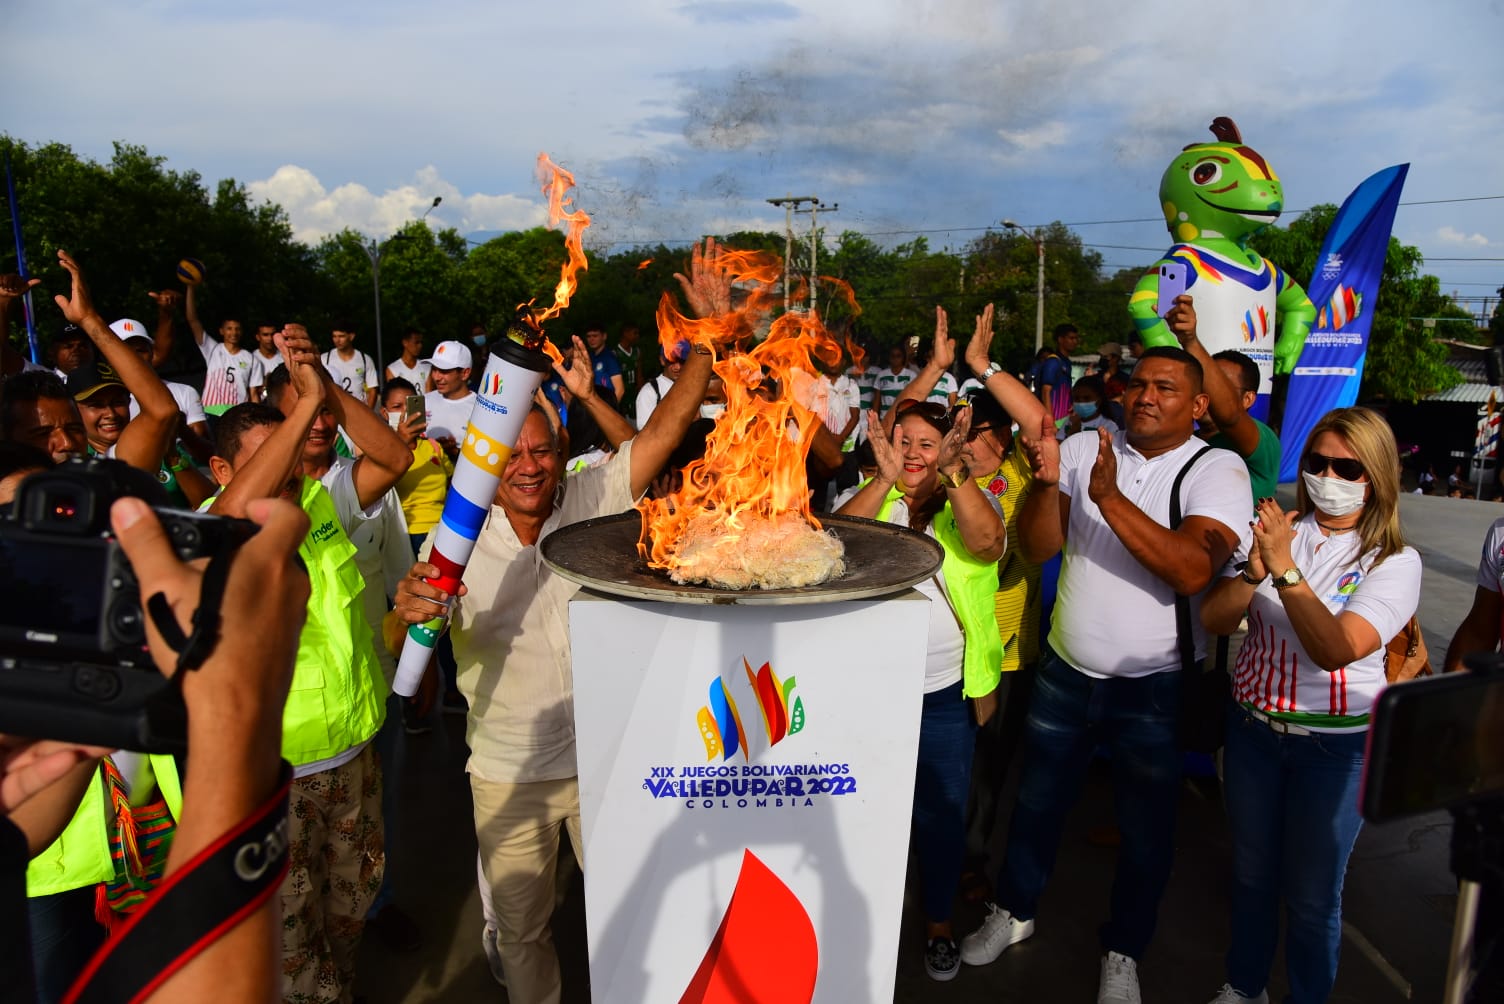 Encendido de antorcha en Valledupar, Juegos Bolivarianos